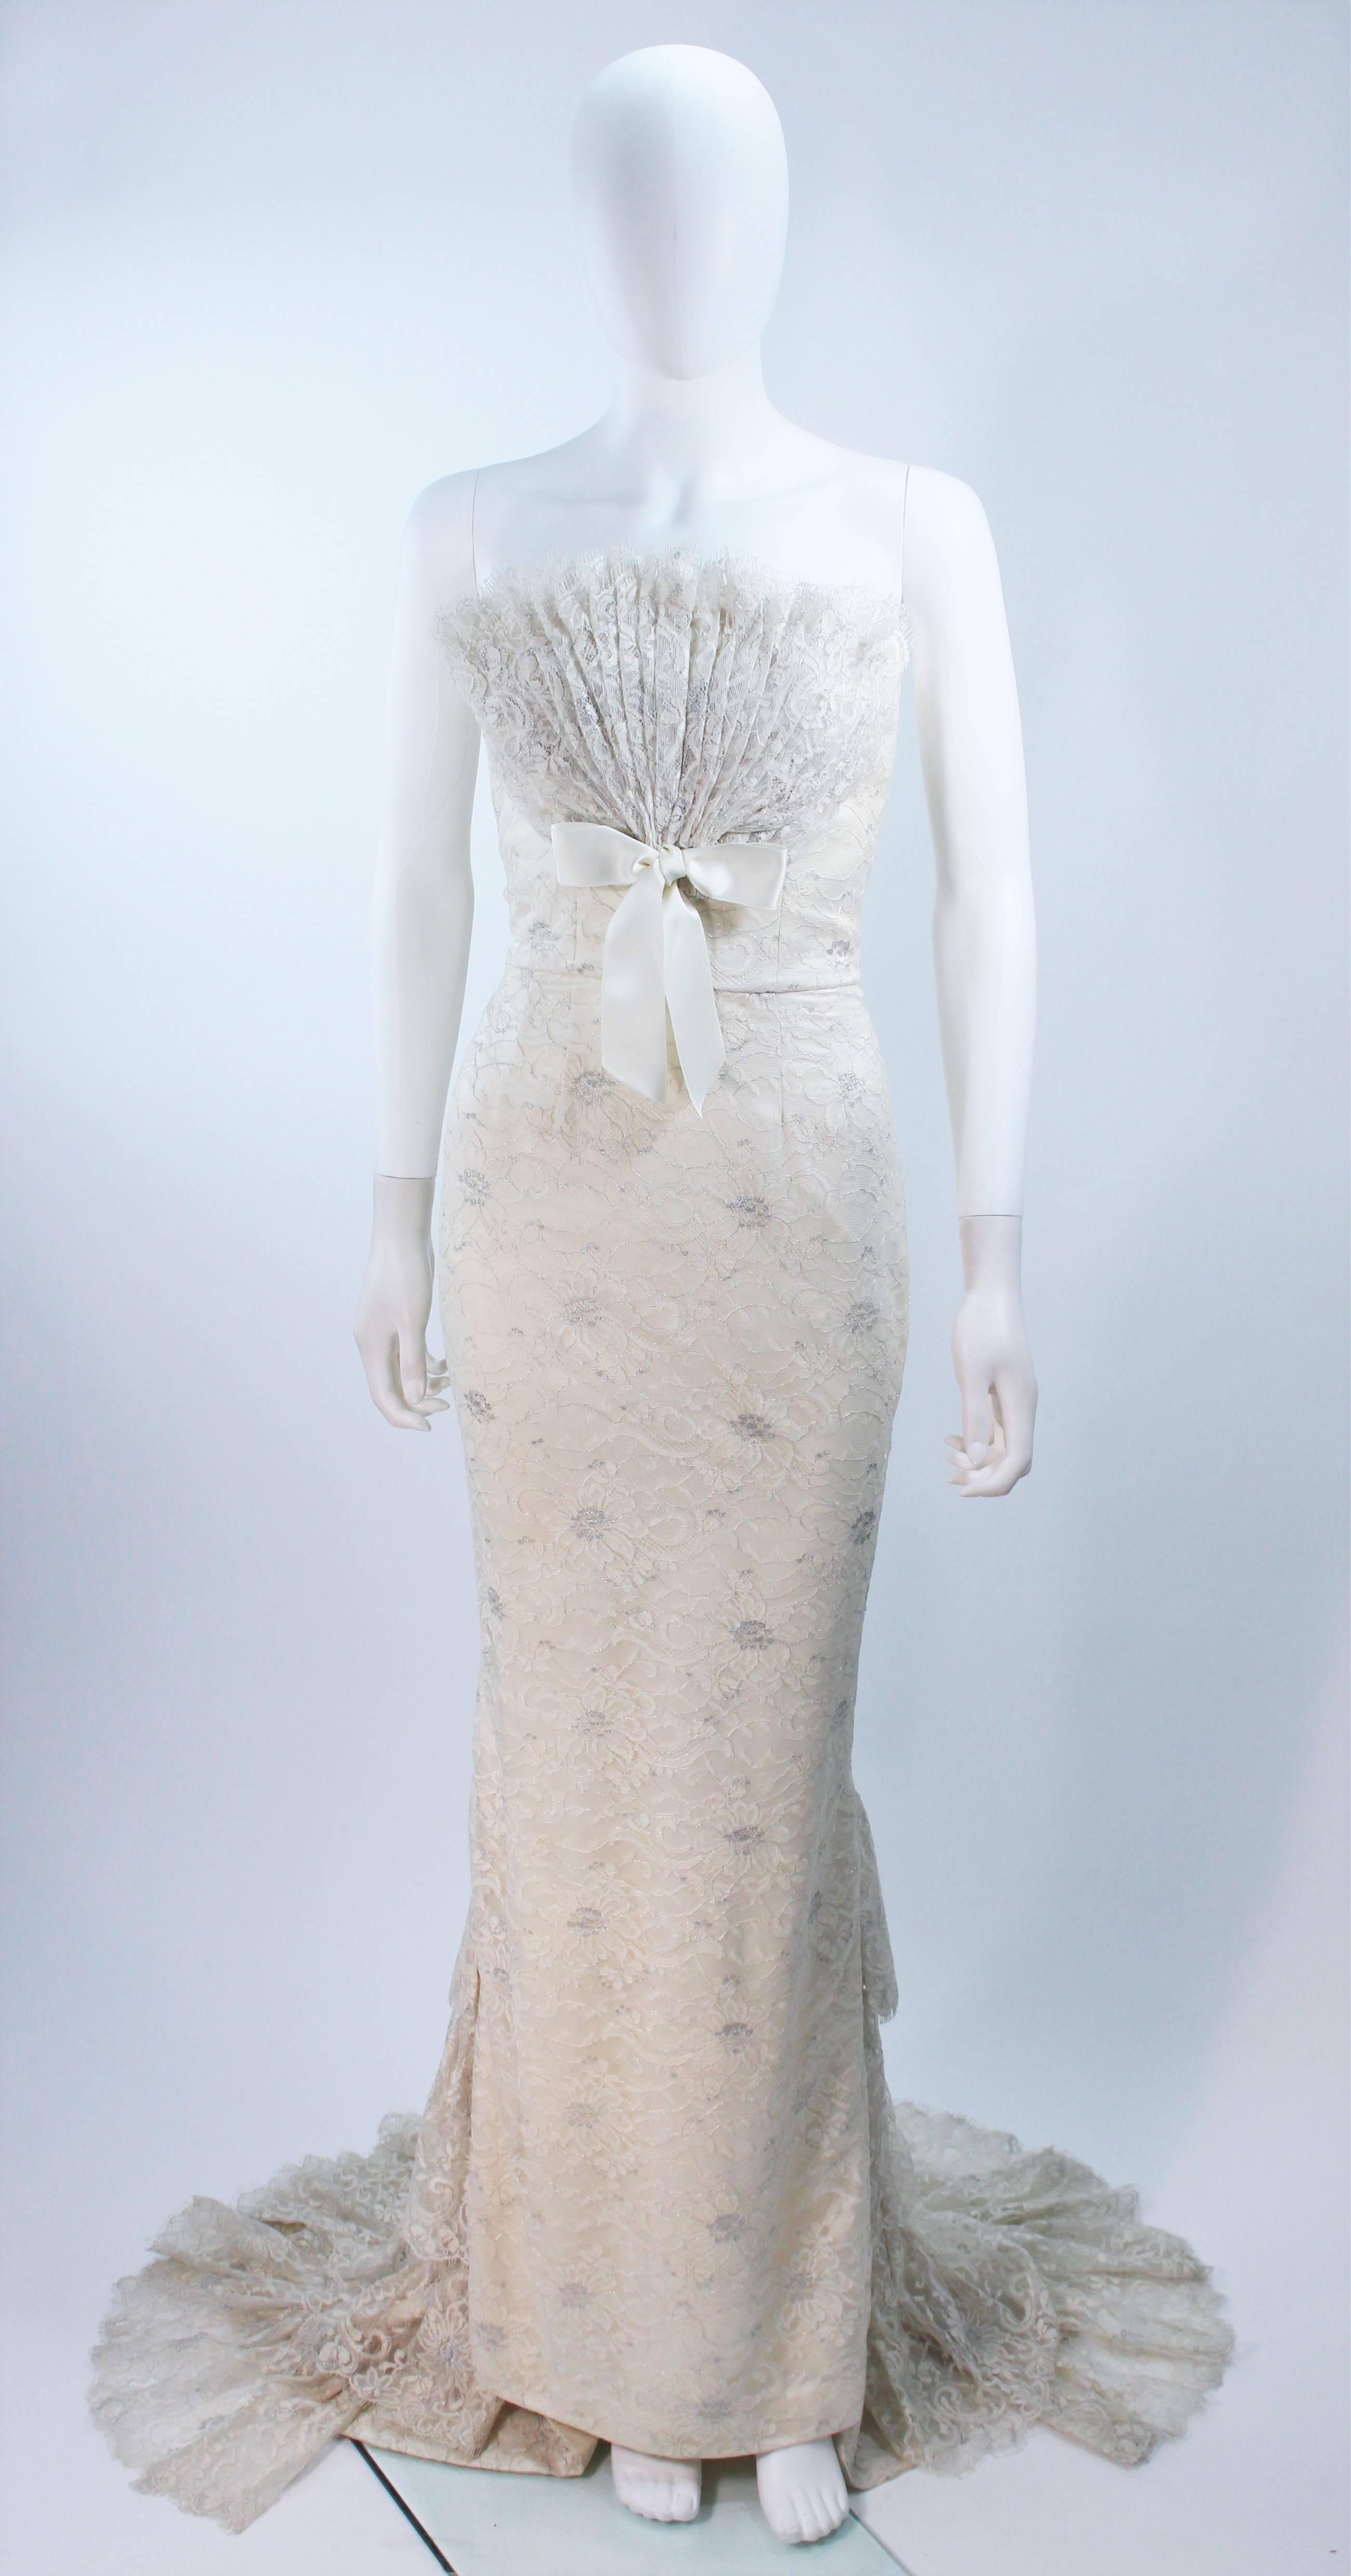 Cette robe Elizabeth Mason Couture présente un superbe drapé de dentelle avec une traîne et un buste en éventail. La base est entièrement désossée et la fermeture à glissière est cachée au centre du dos.

Il s'agit d'une commande sur mesure.